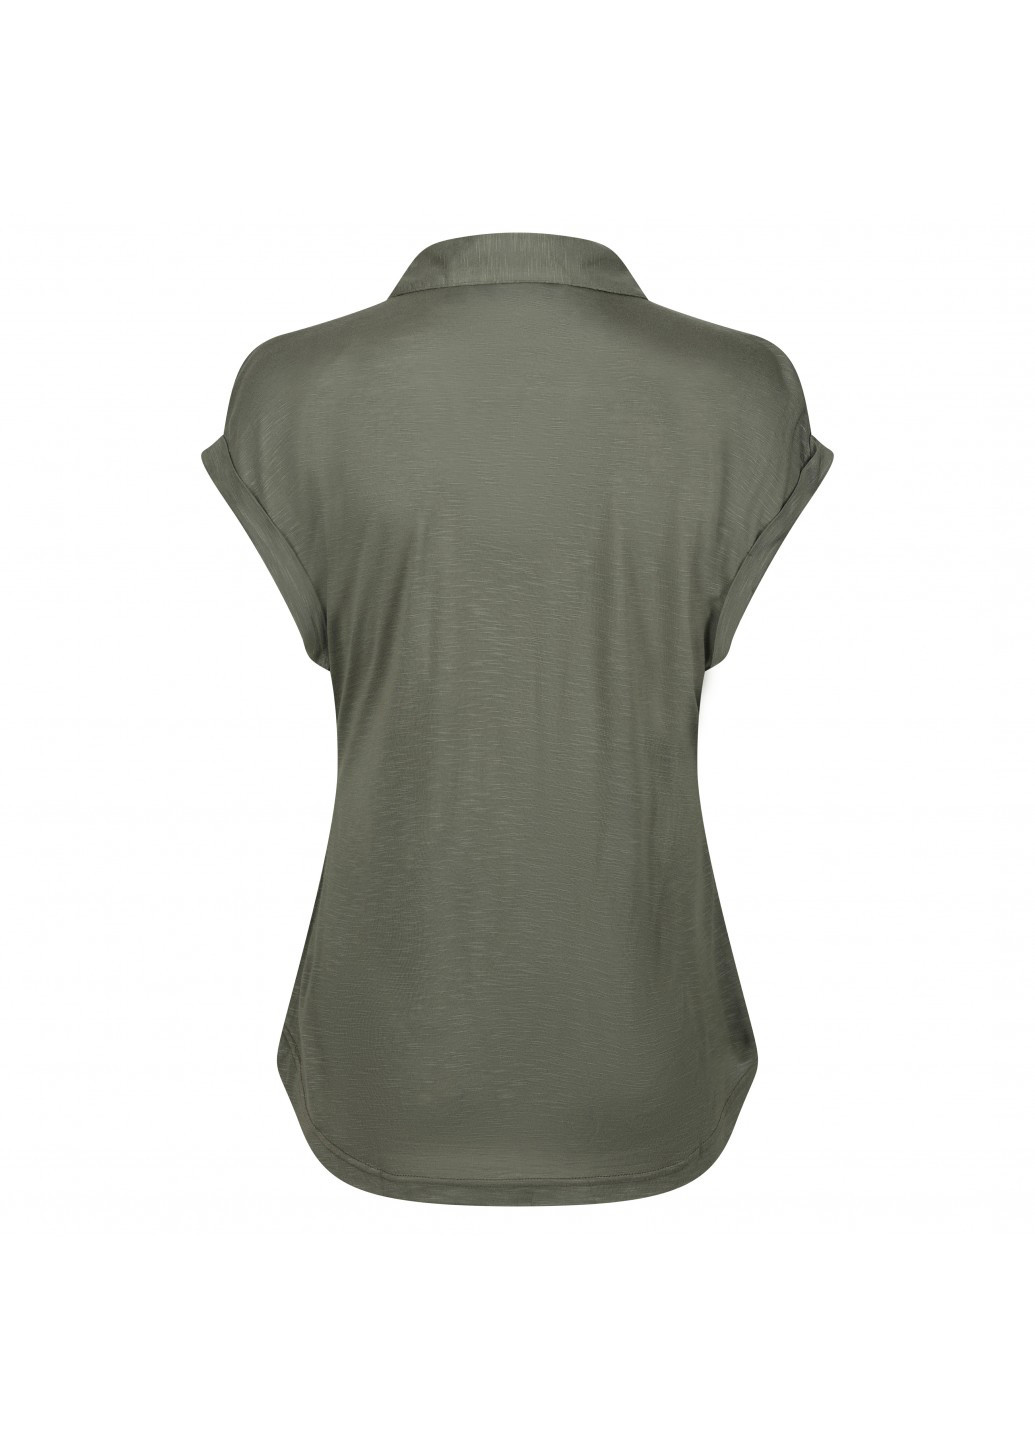 Оливковая (хаки) женская футболка-поло Regatta меланжевая